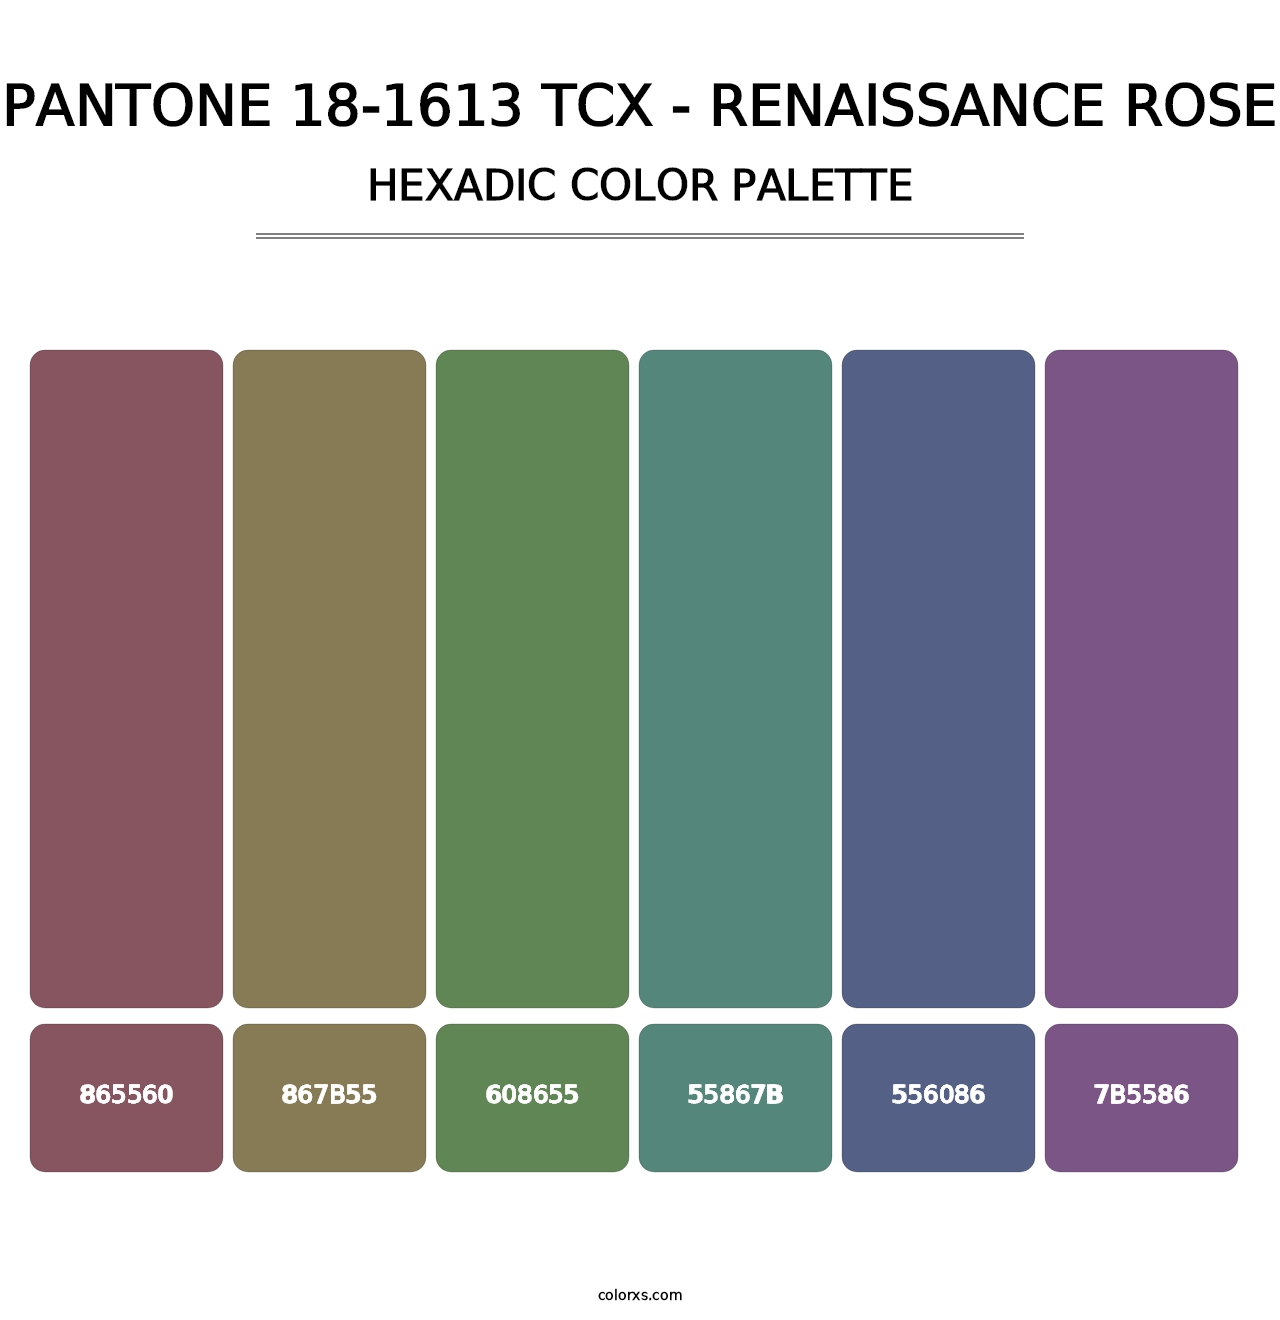 PANTONE 18-1613 TCX - Renaissance Rose - Hexadic Color Palette